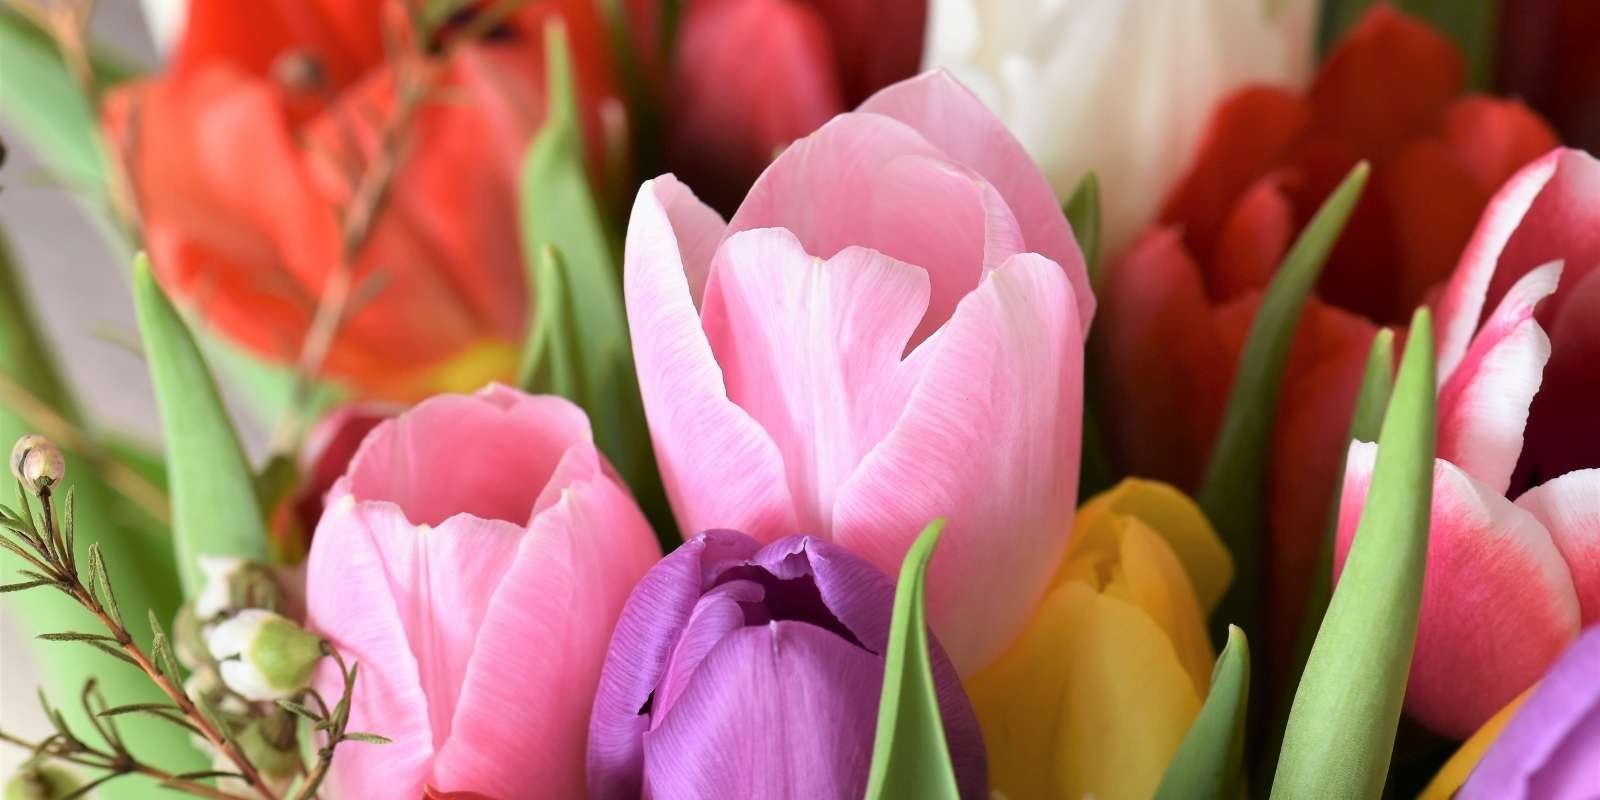 Duque Bajo mandato Rubicundo Manda flores a domicilio | El lenguaje de las flores |FlorClick.com